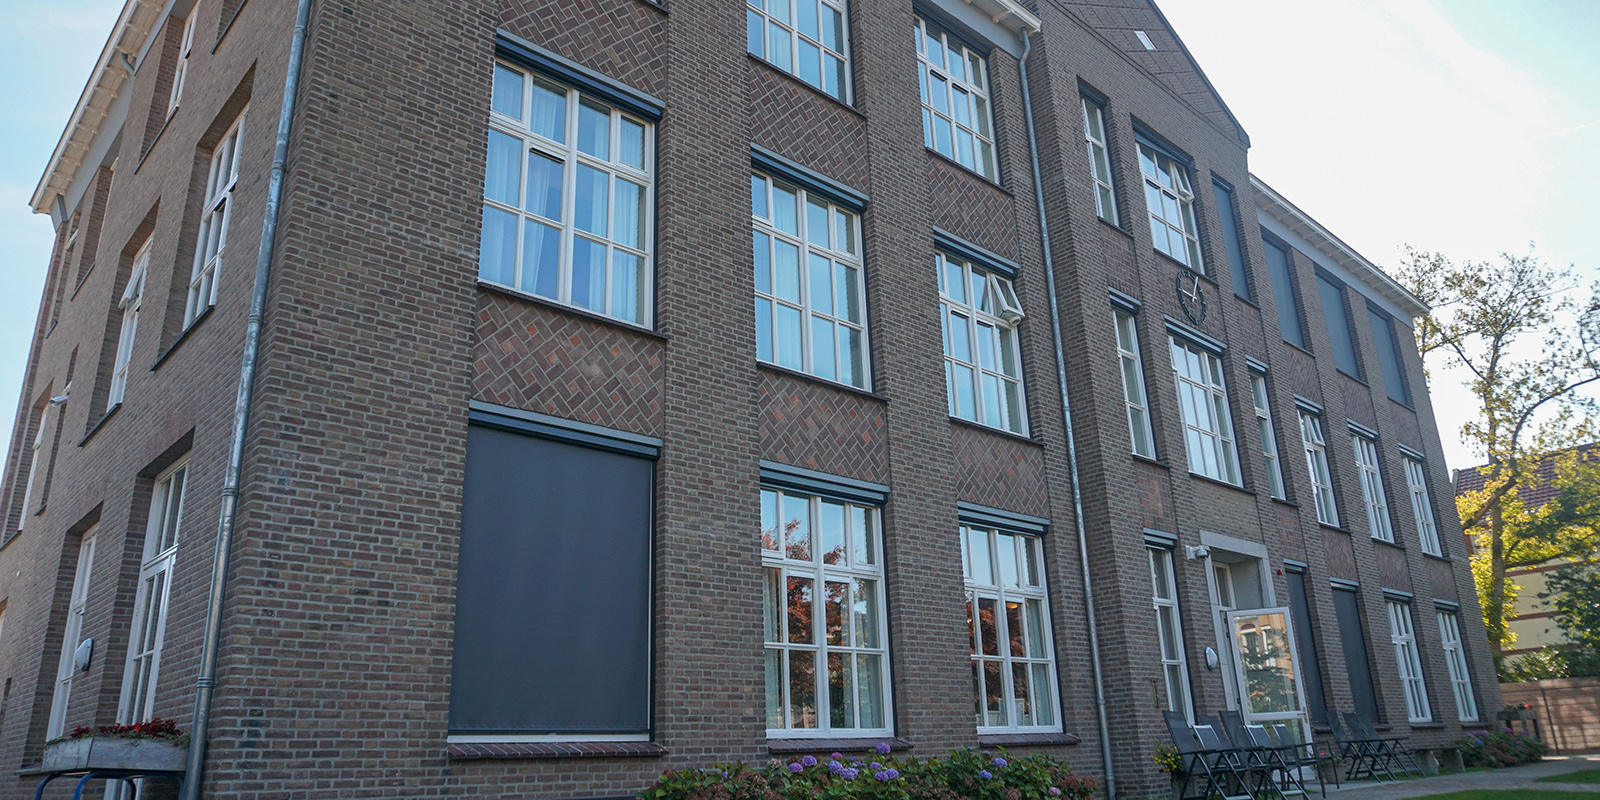 Het Prins Hendrikhuis in Winterswijk is een kleinschalige en betaalbare woonzorglocatie voor mensen met dementie